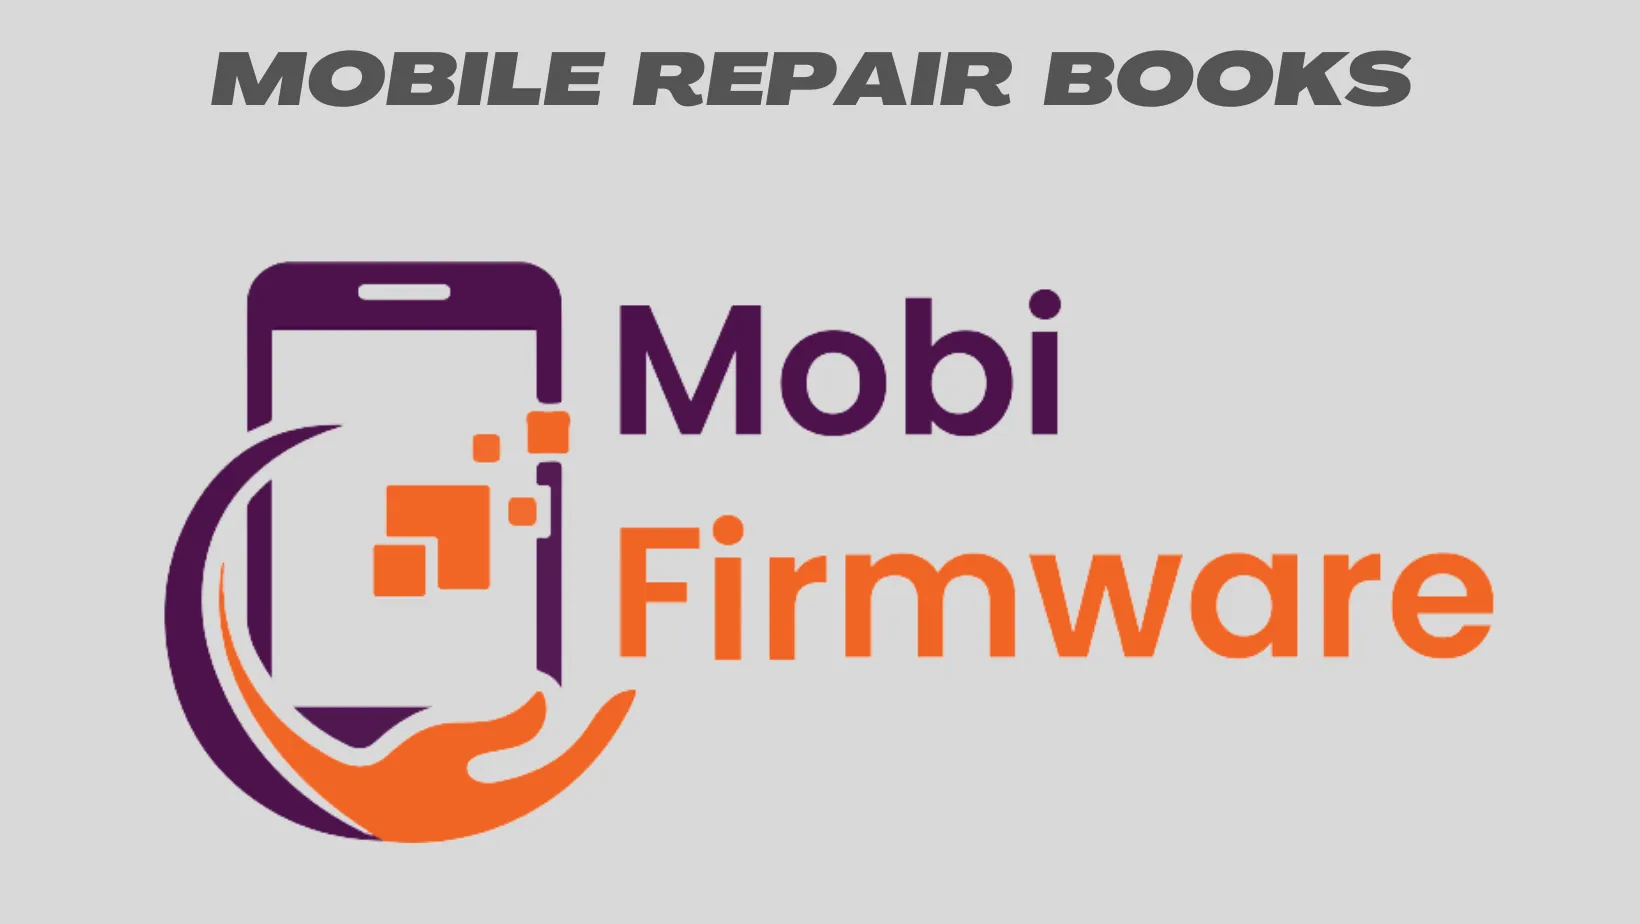 Mobile Repair Books